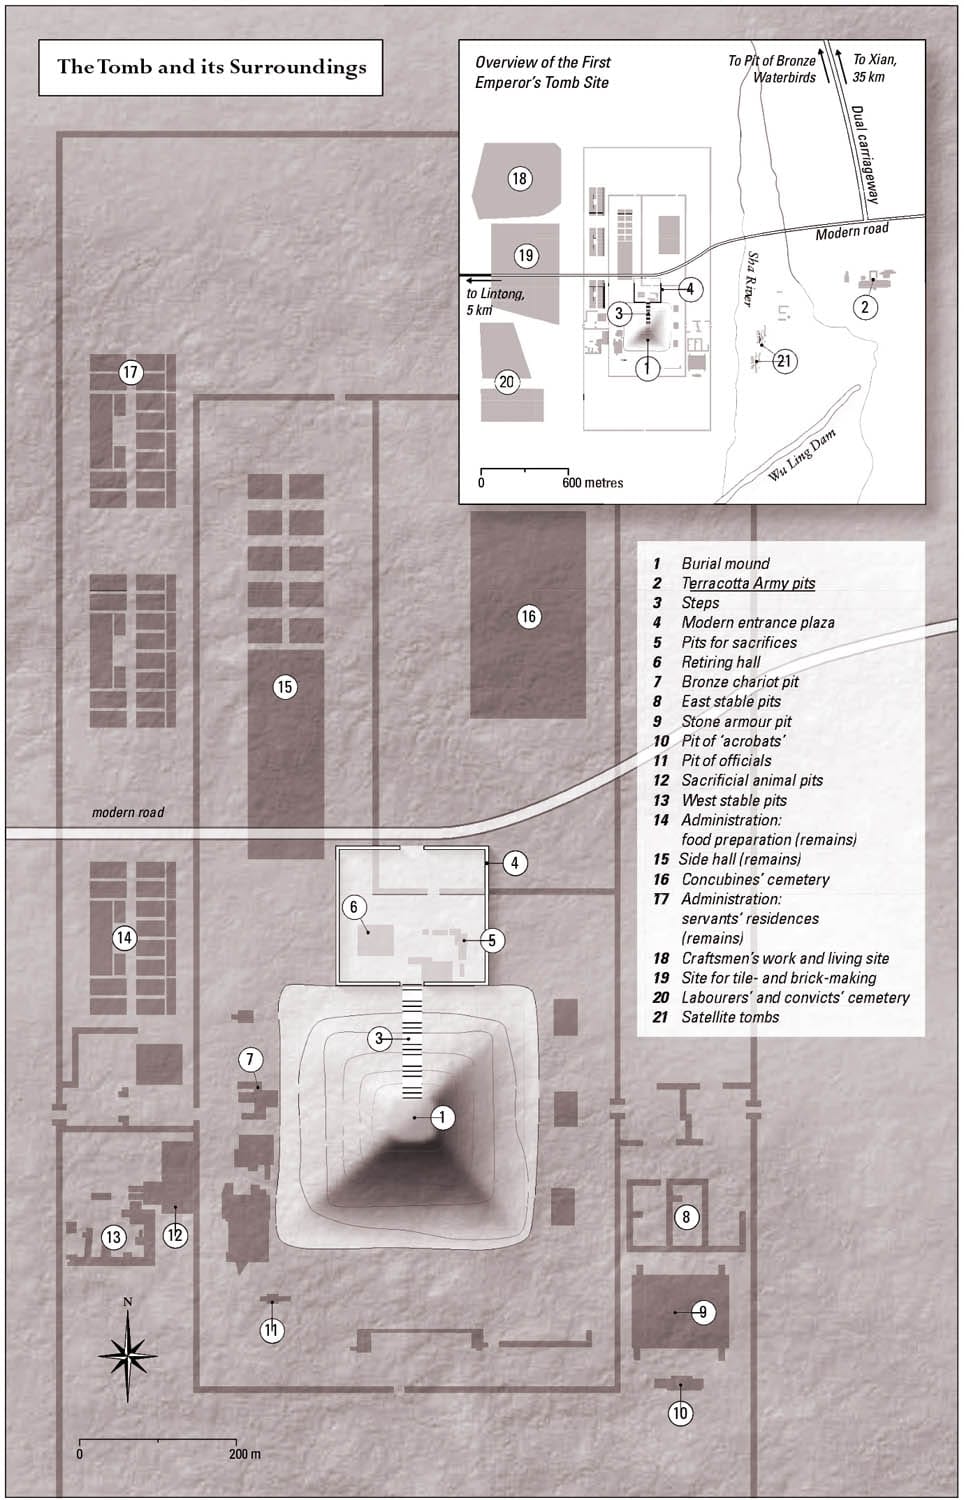 Map Qin Tomb Surroundings